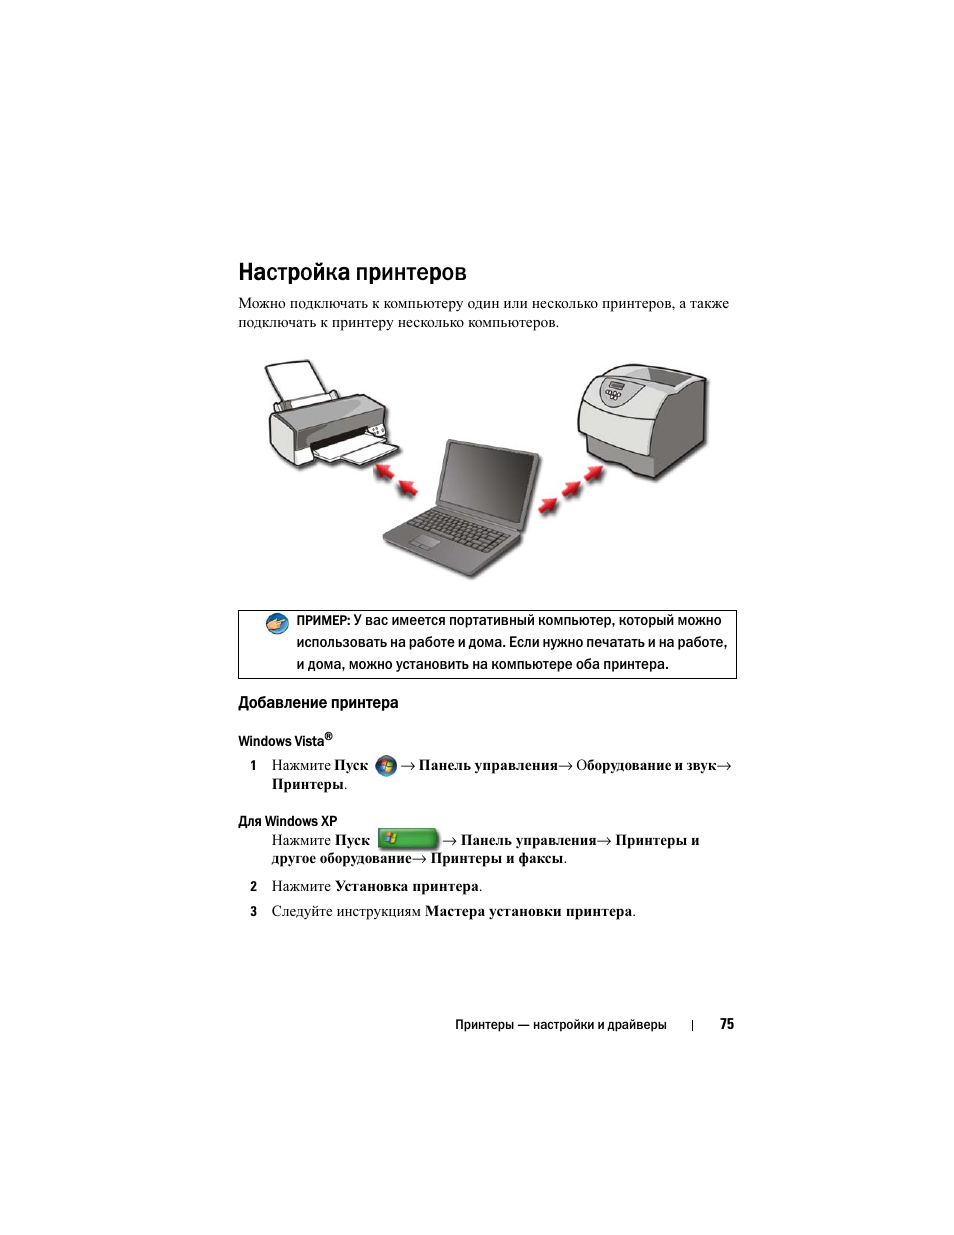 Настройка принтеров, Добавление принтера | Инструкция по эксплуатации Dell Inspiron 560 | Страница 75 / 384